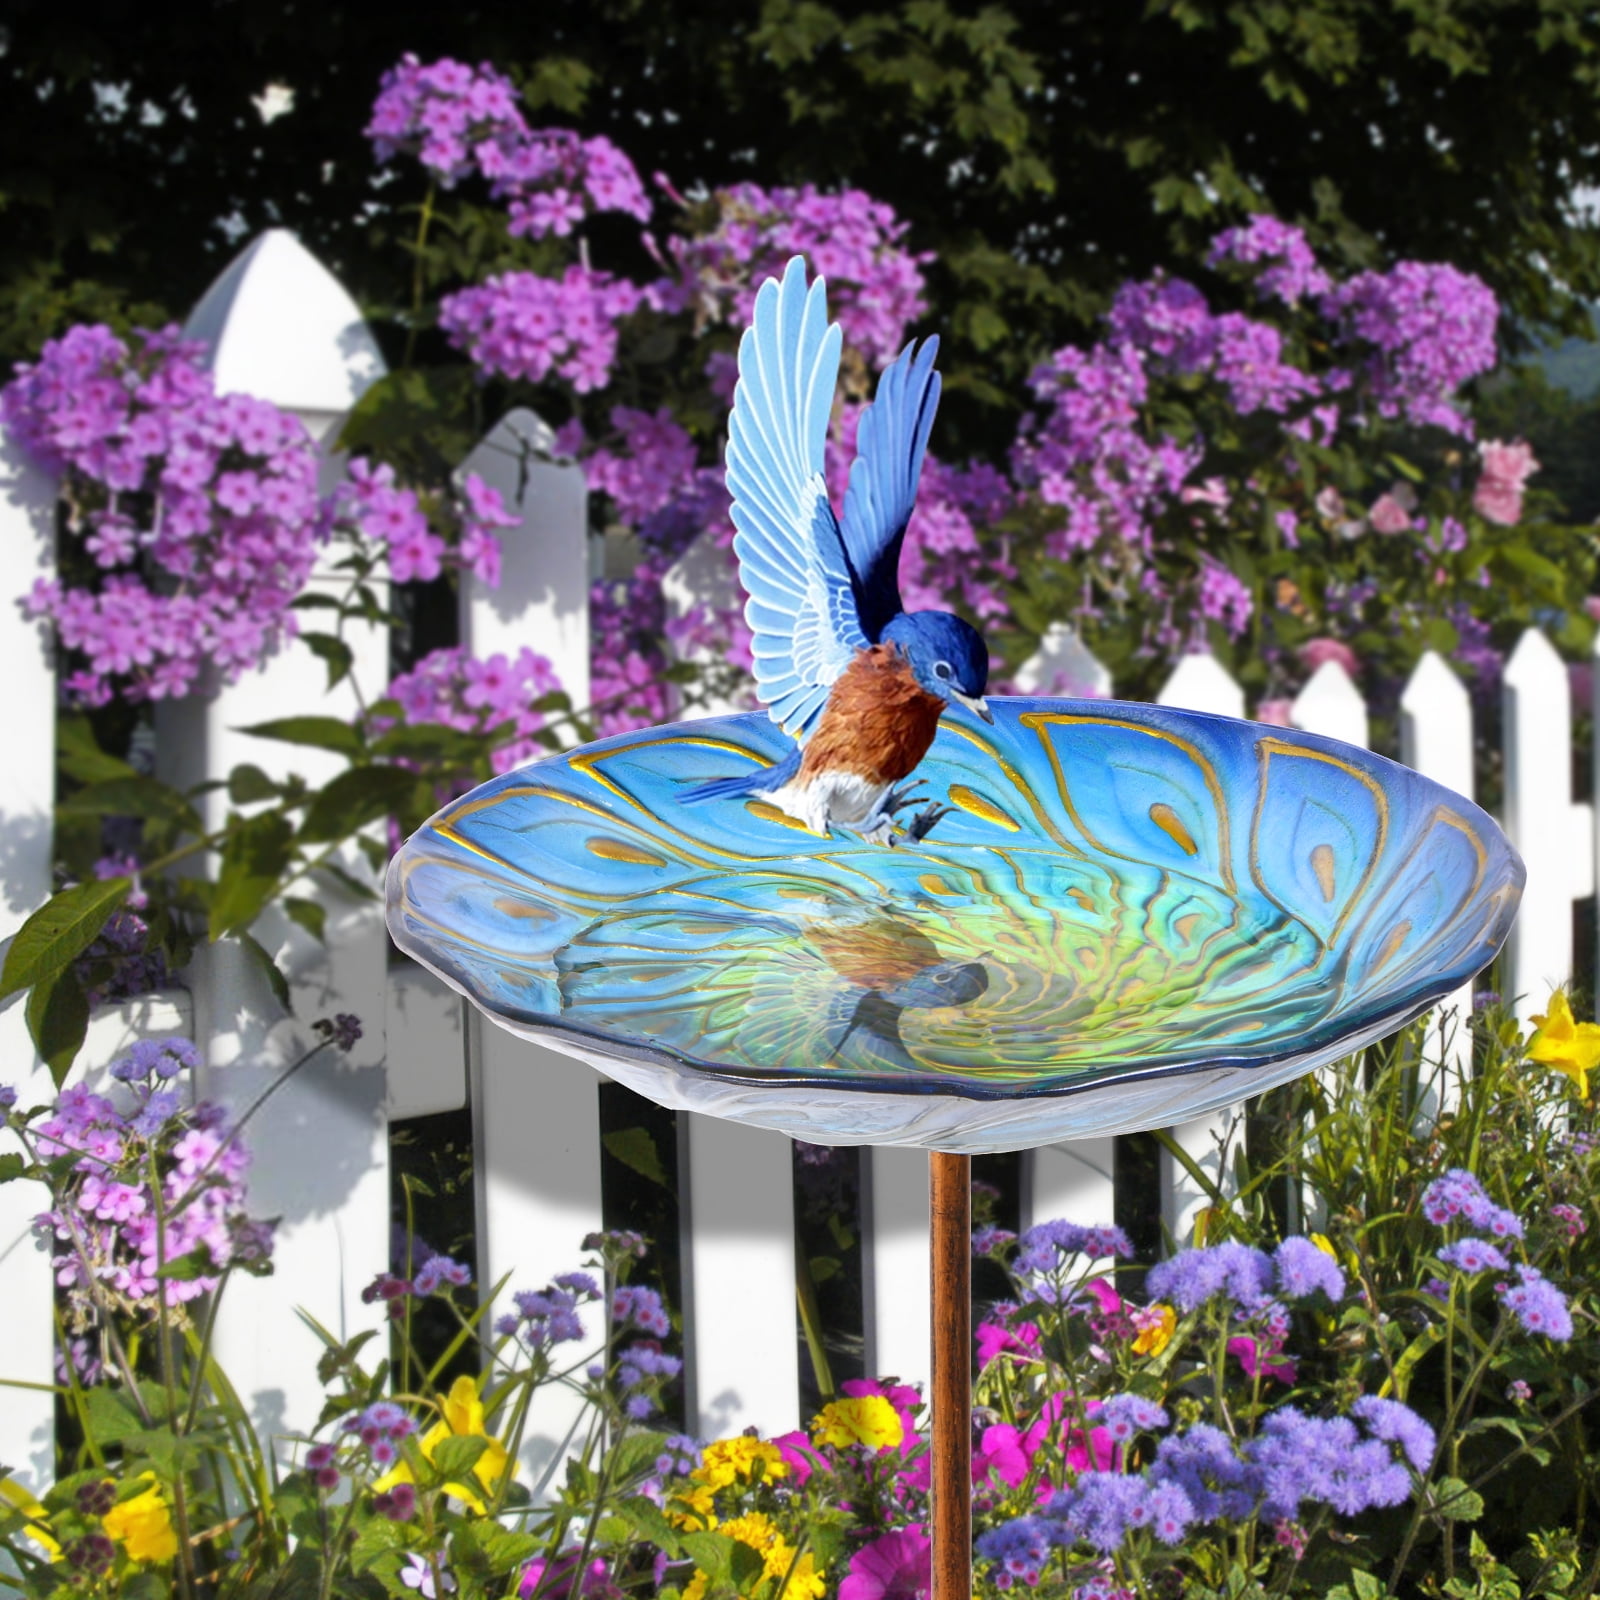 Outdoor Bird Bath Glass Birdbath Garden Birdfeeder with Metal Stake Decoration 